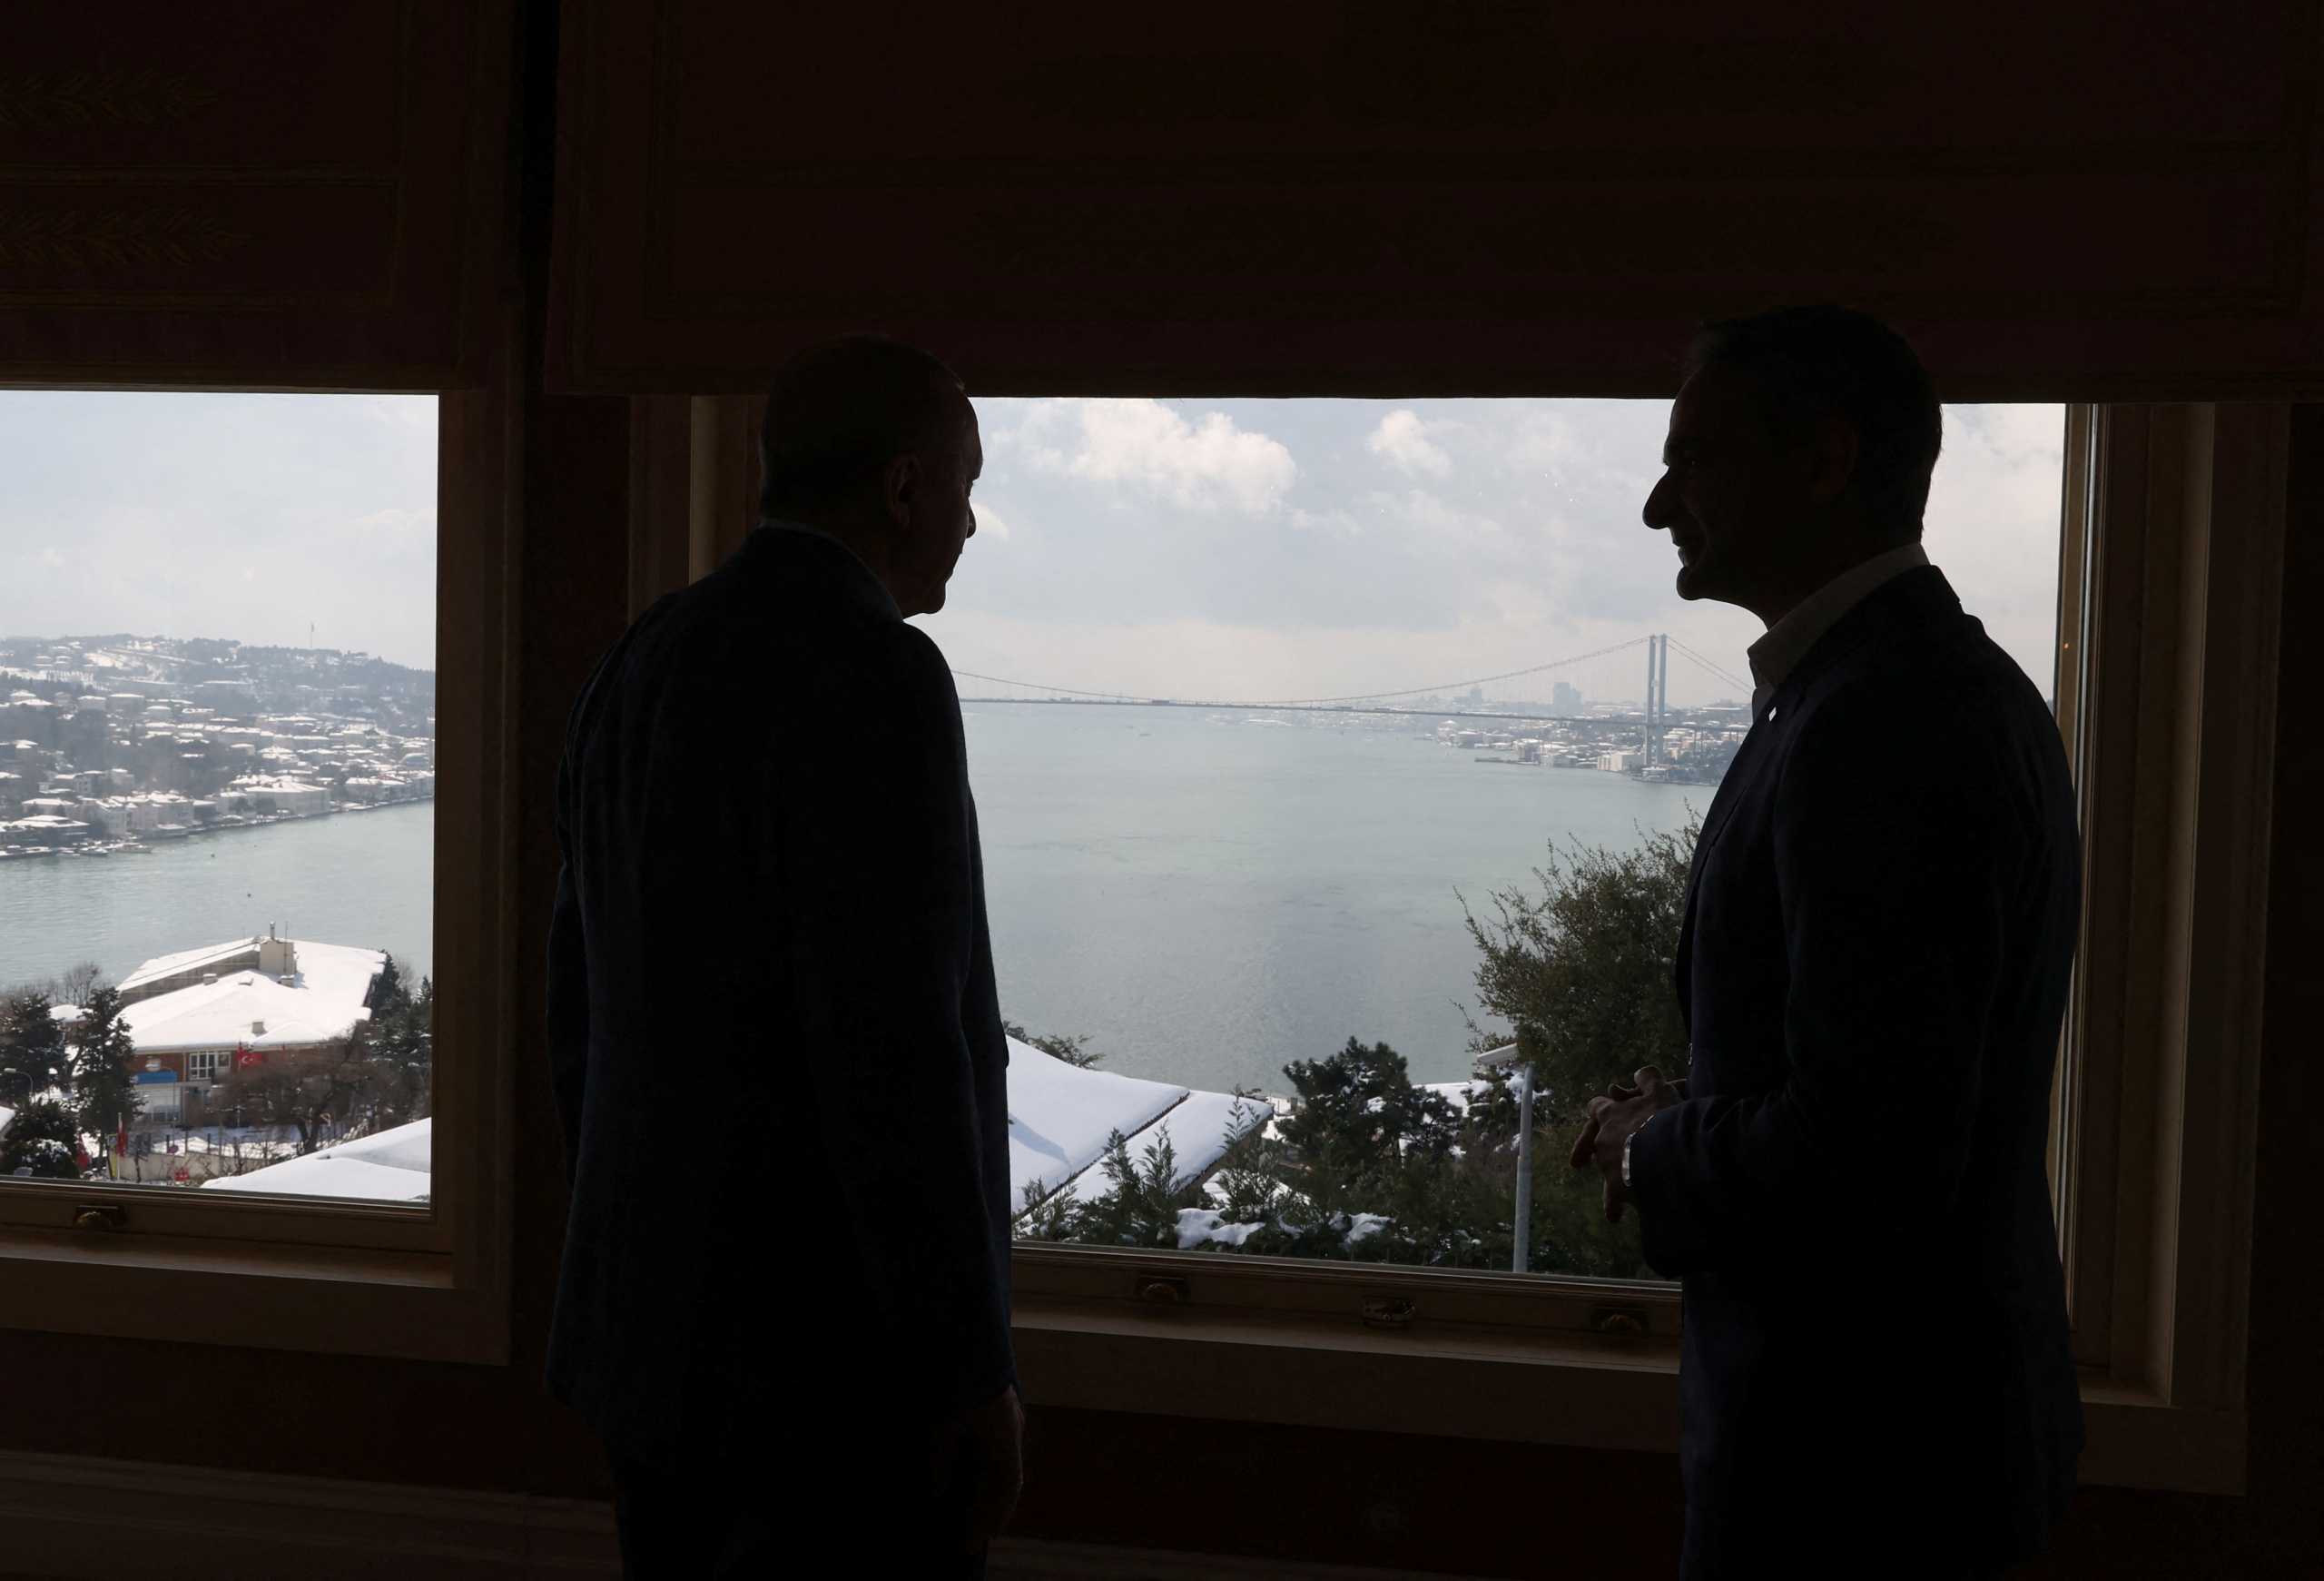 Στέιτ Ντιπάρτμεντ: Ελλάδα και Τουρκία να επιλύουν τις διαφορές τους με διπλωματικό τρόπο